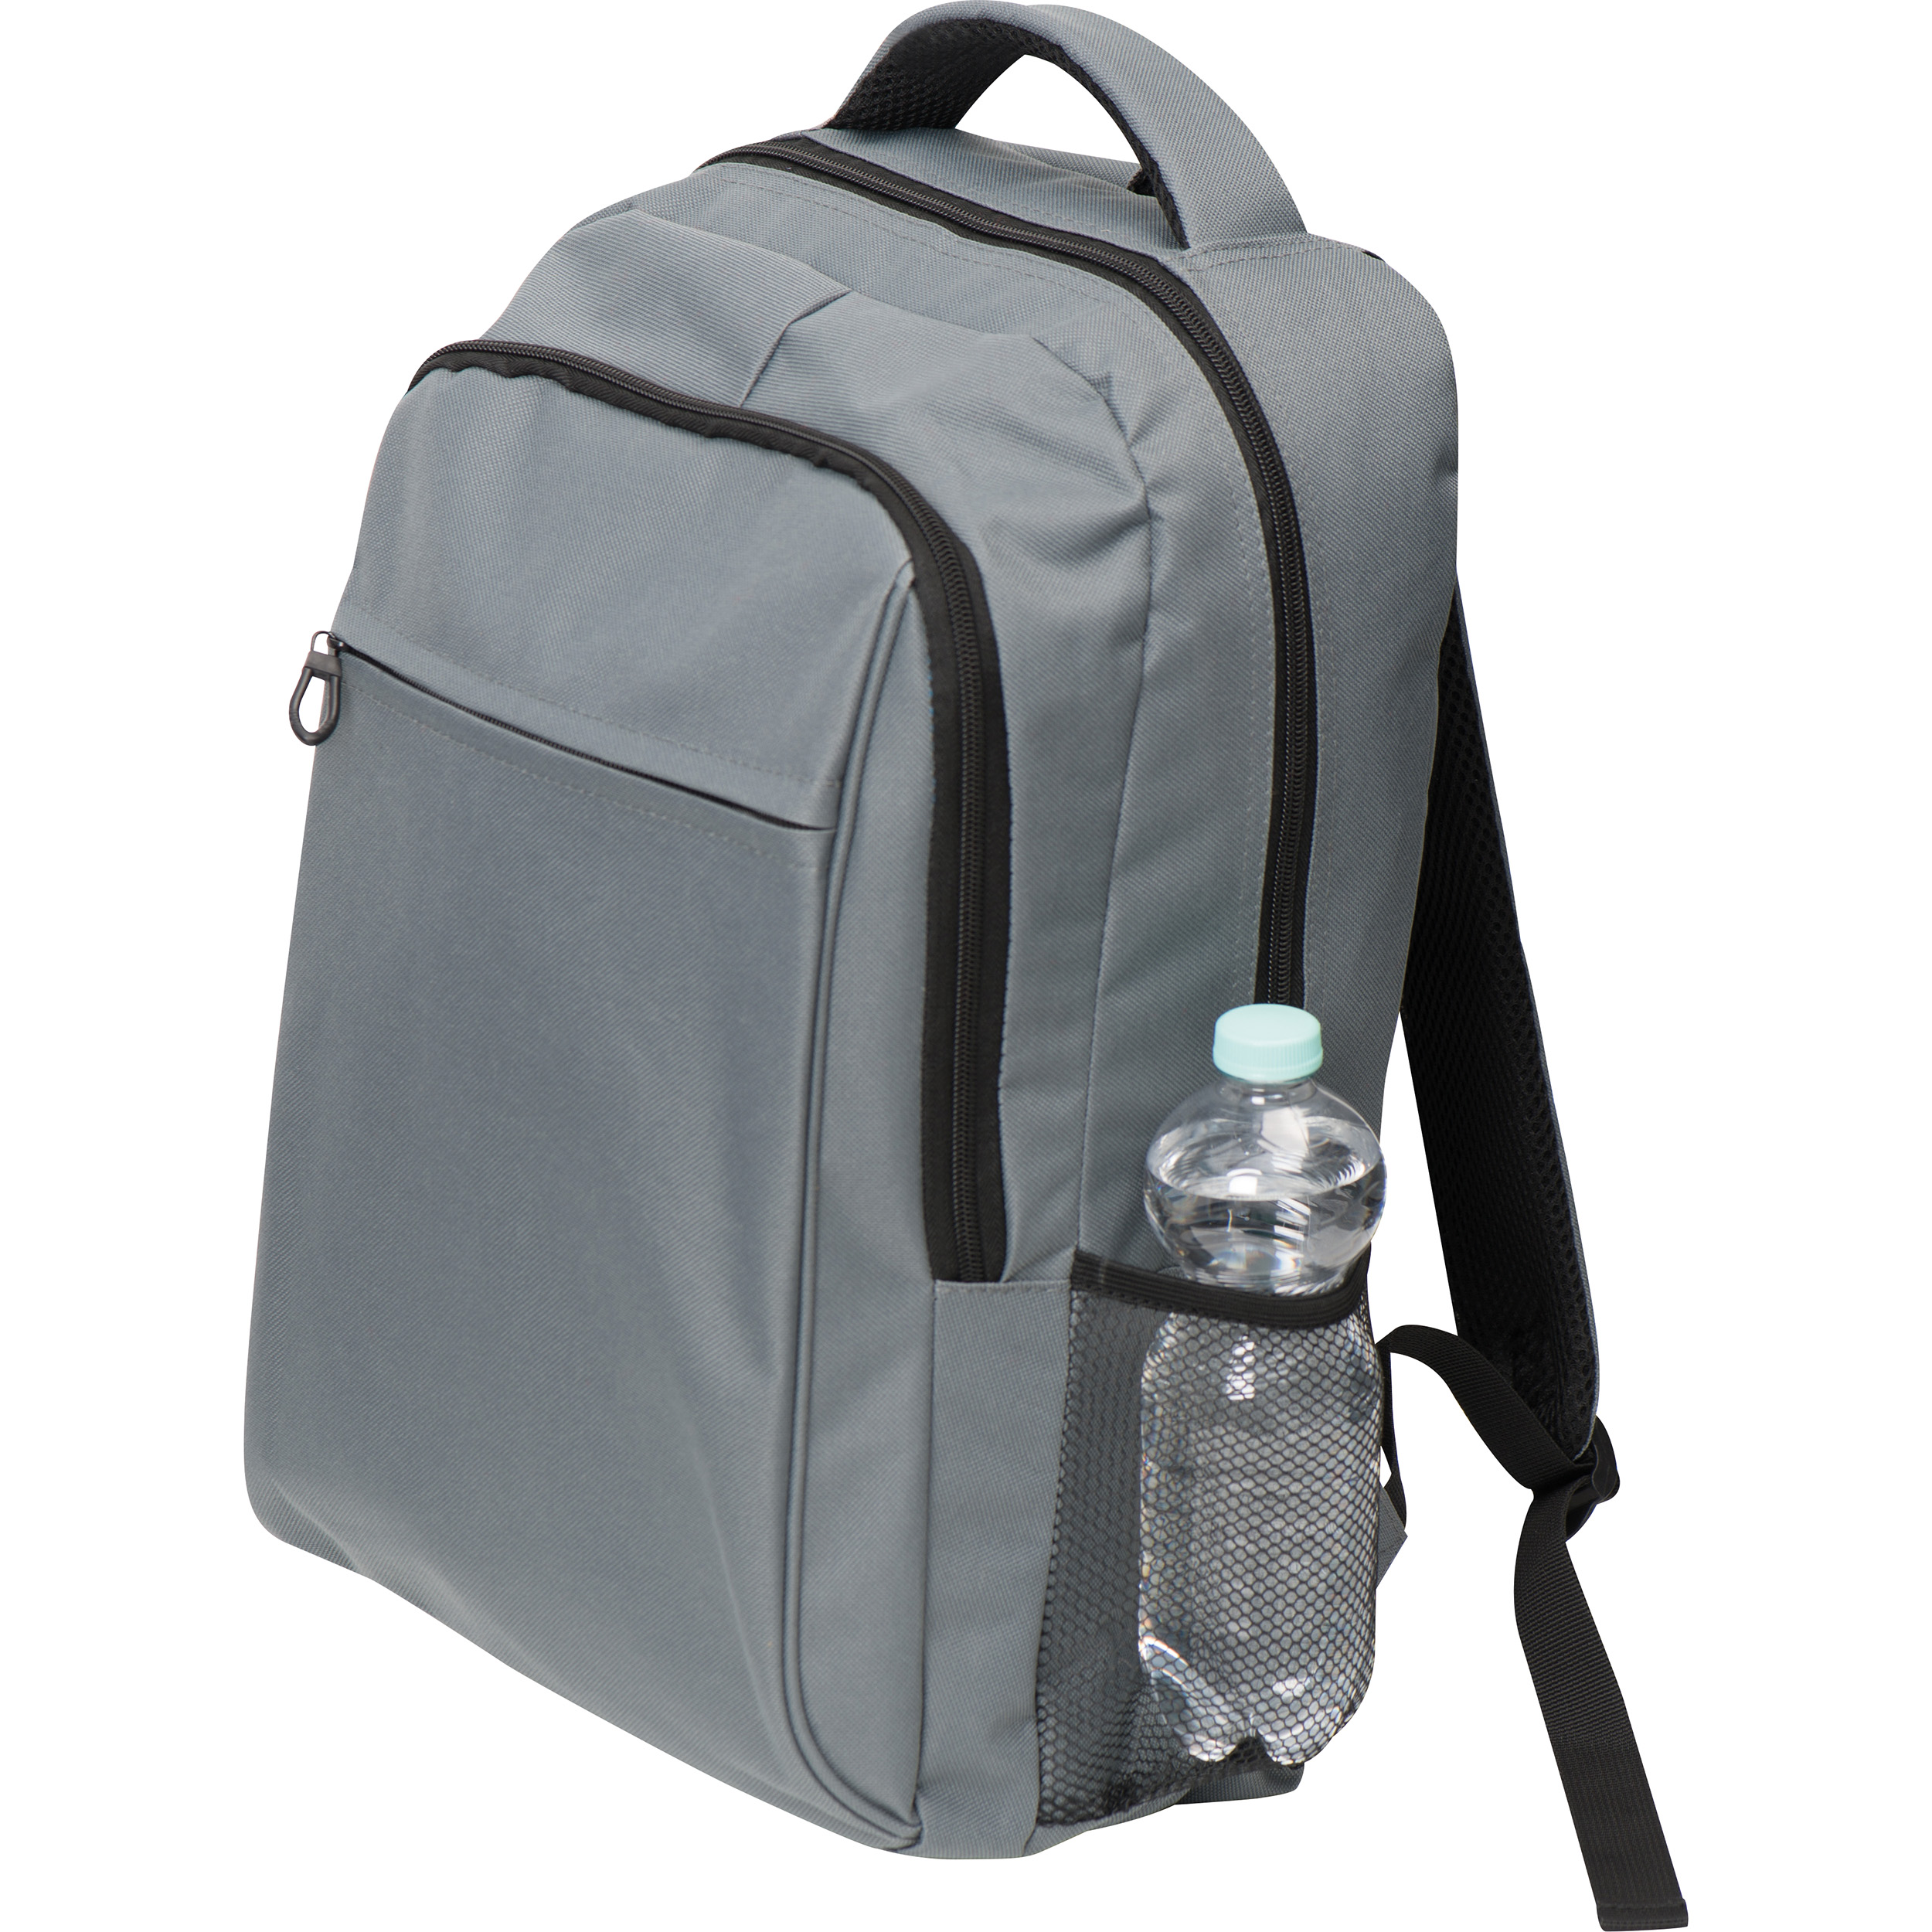 Polyester backpack with a custom logo - Ashton-under-Lyne - Burton-on-Trent